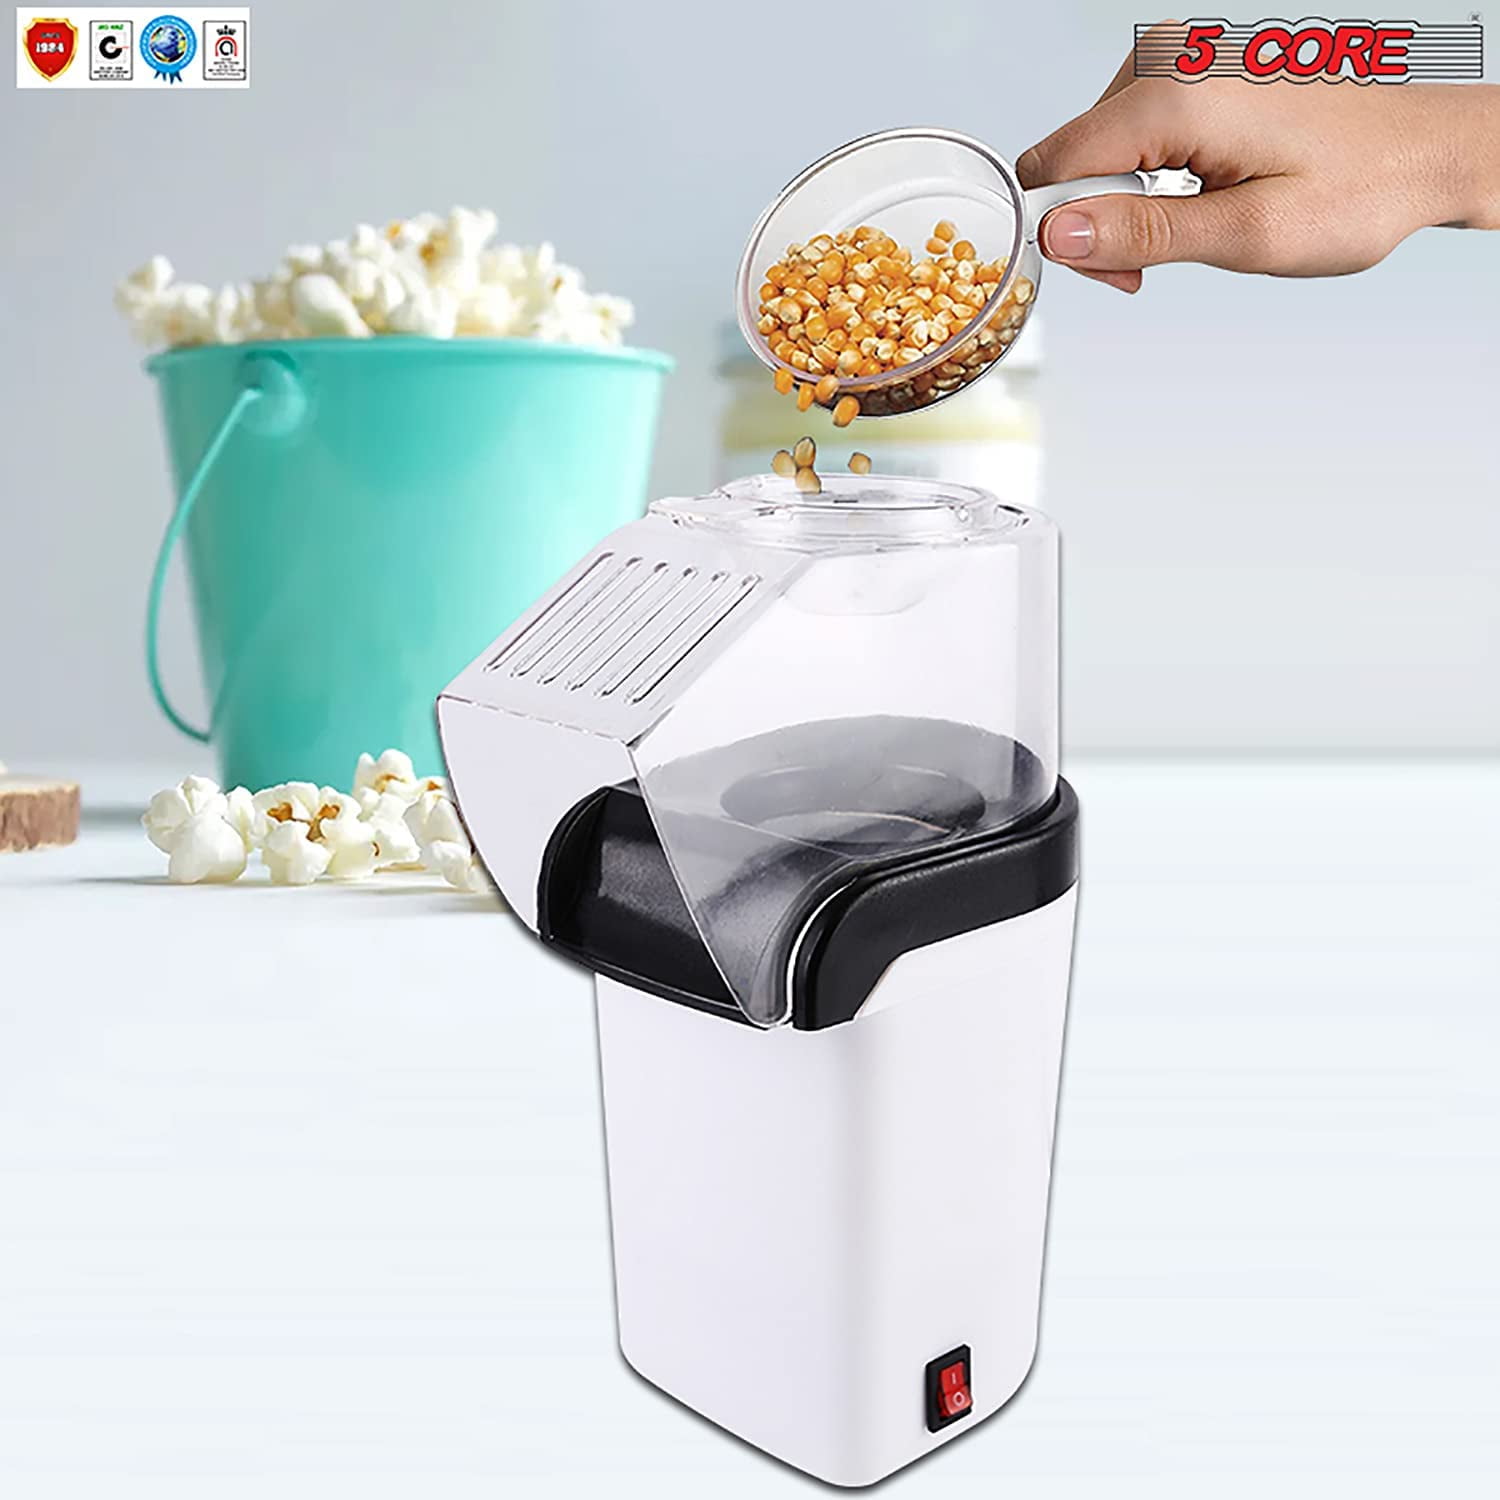  Vminno 1200W Fast Hot Air Popcorn Popper - 4.5 Quarts